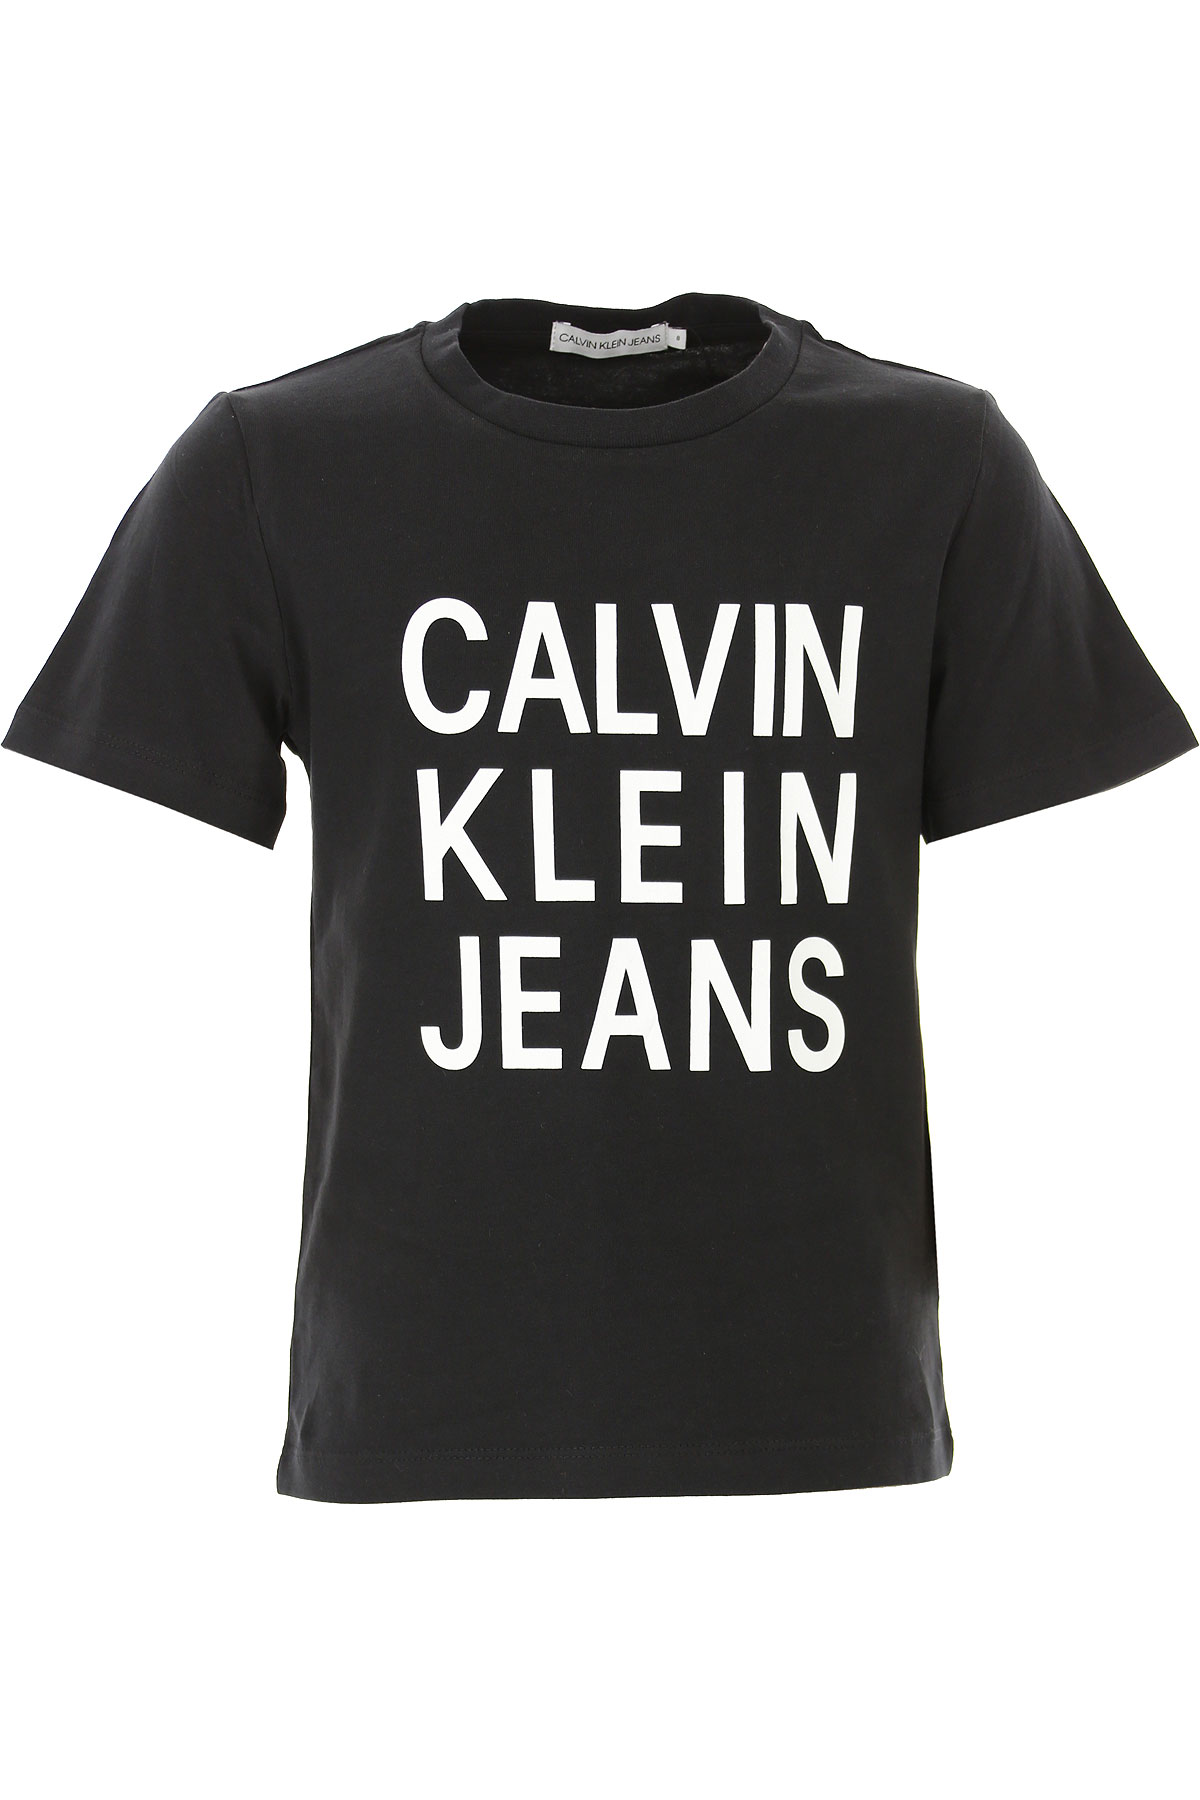 Calvin Klein Kinder T-Shirt für Jungen Günstig im Sale, Schwarz, Baumwolle, 2017, 10Y 12Y 14Y 16Y 4Y 6Y 8Y